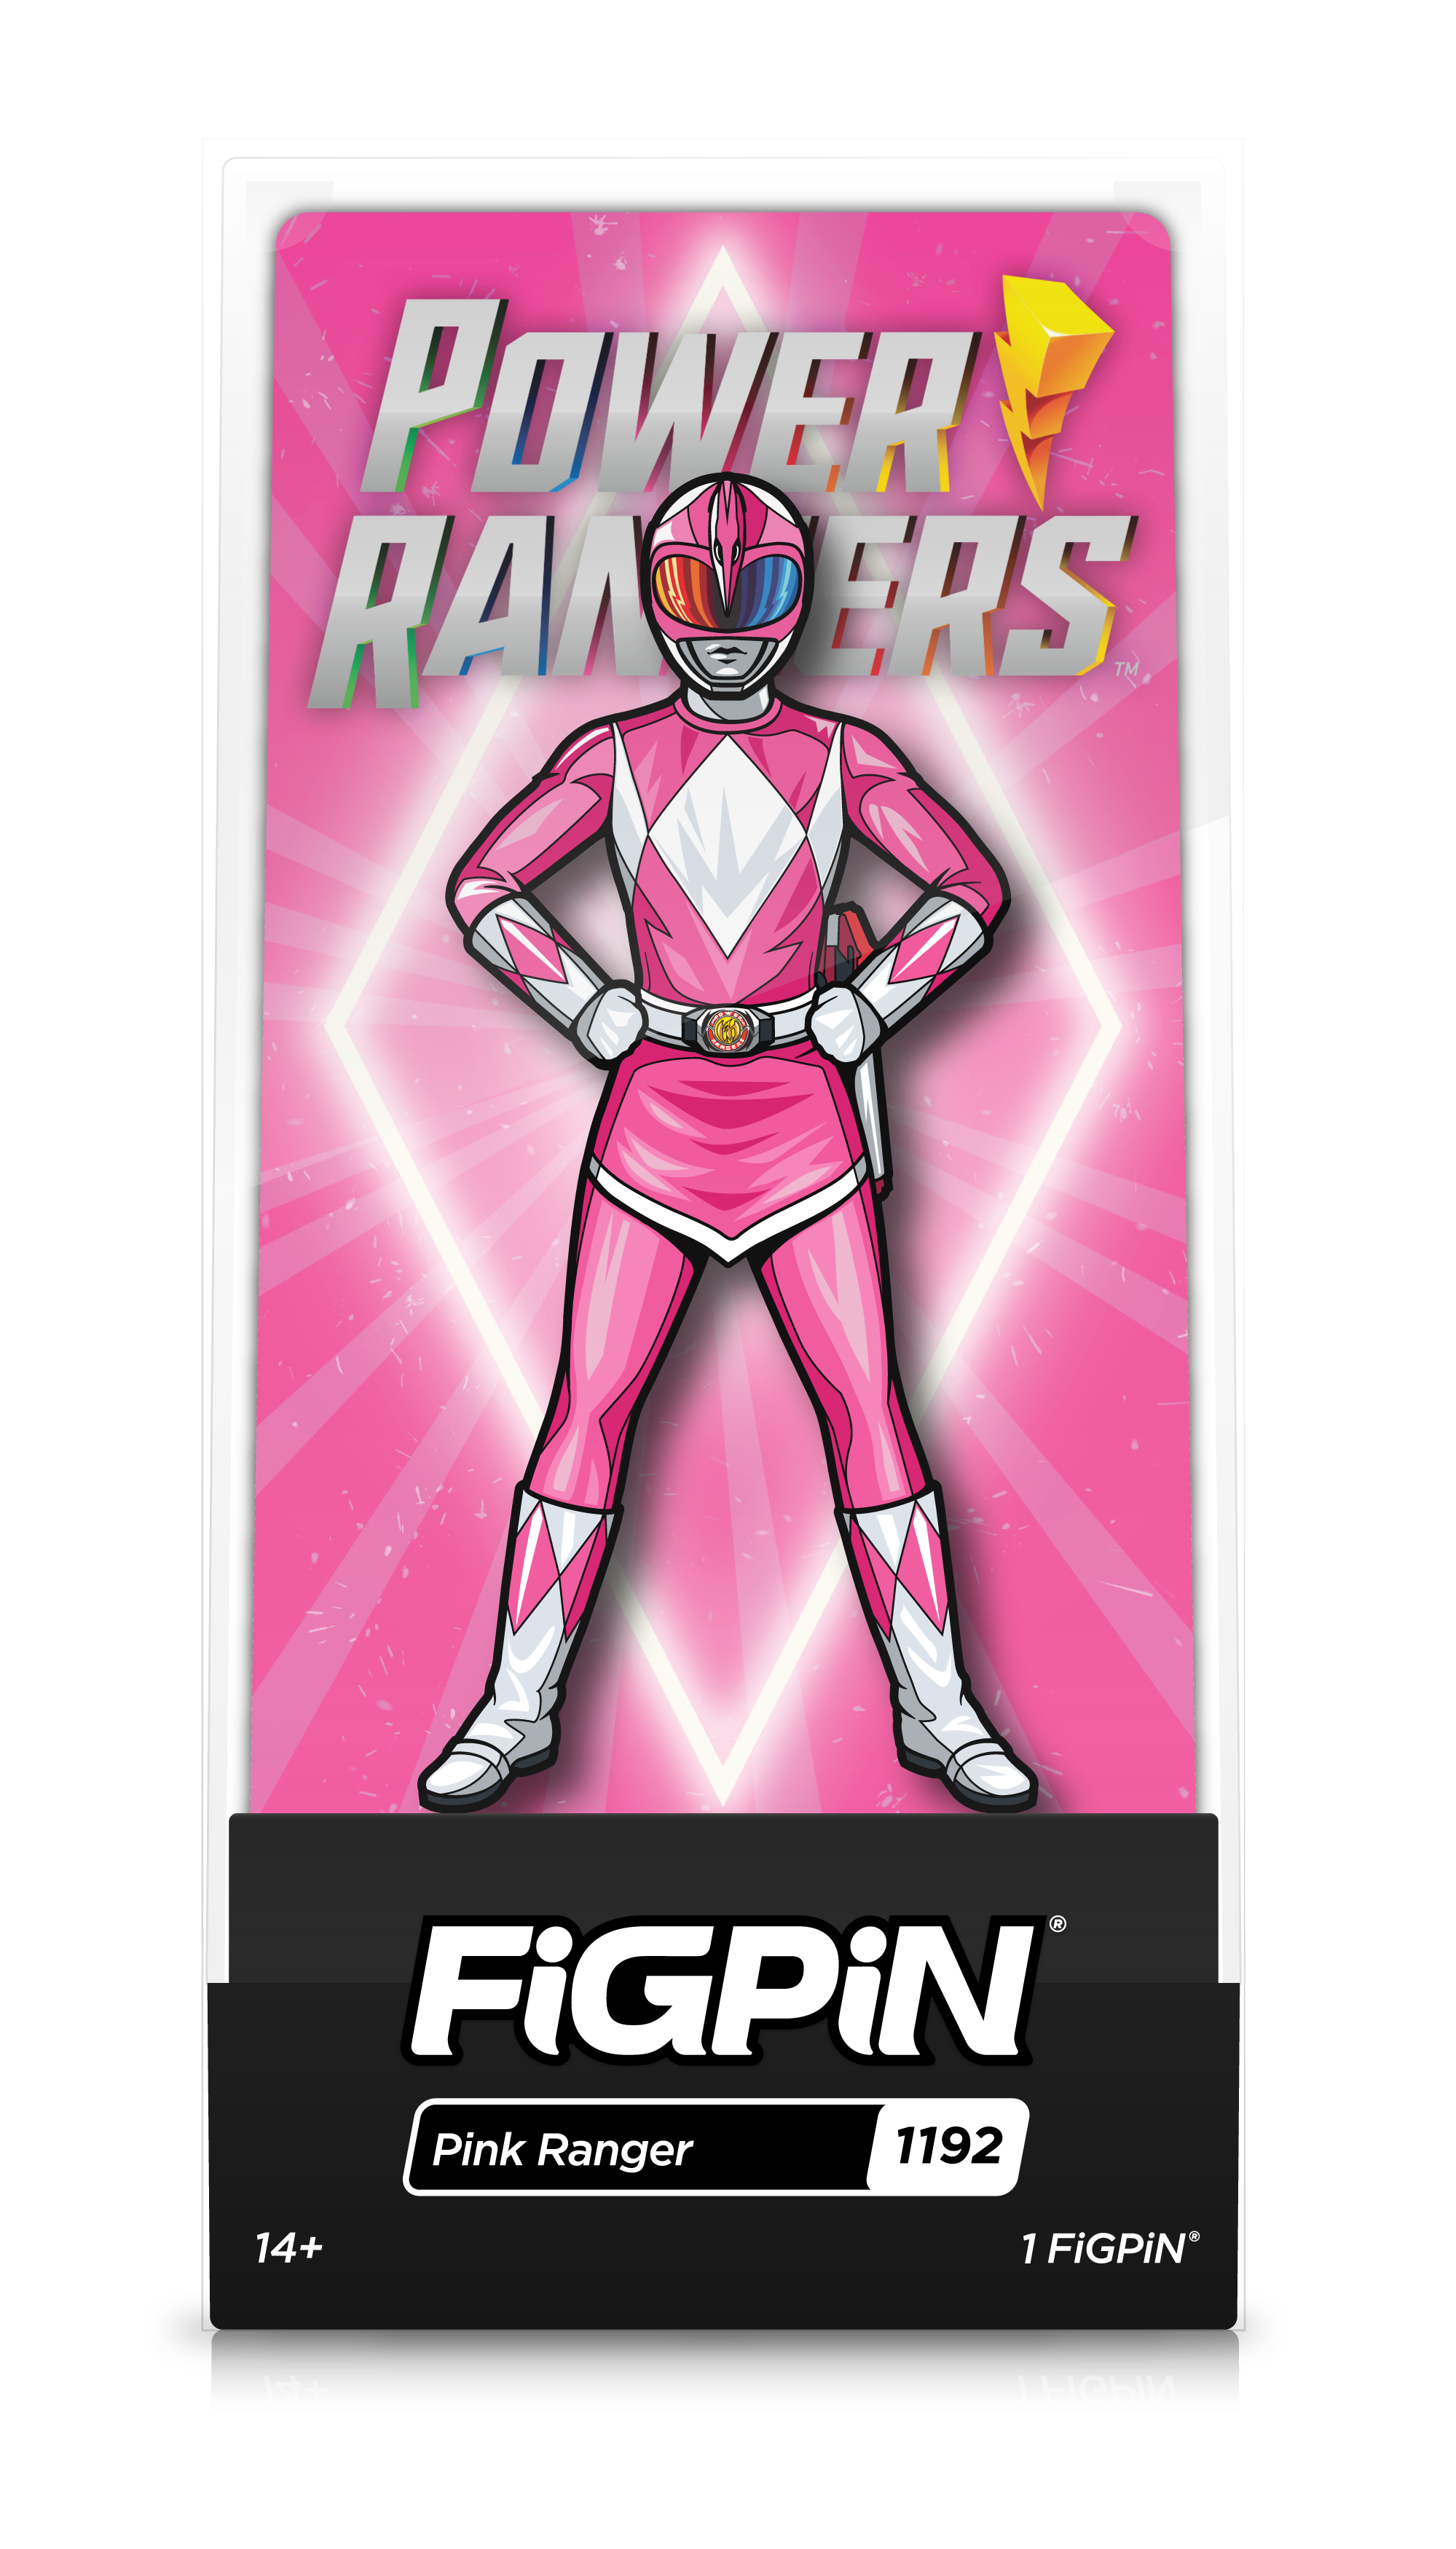 Pink Ranger (1192)